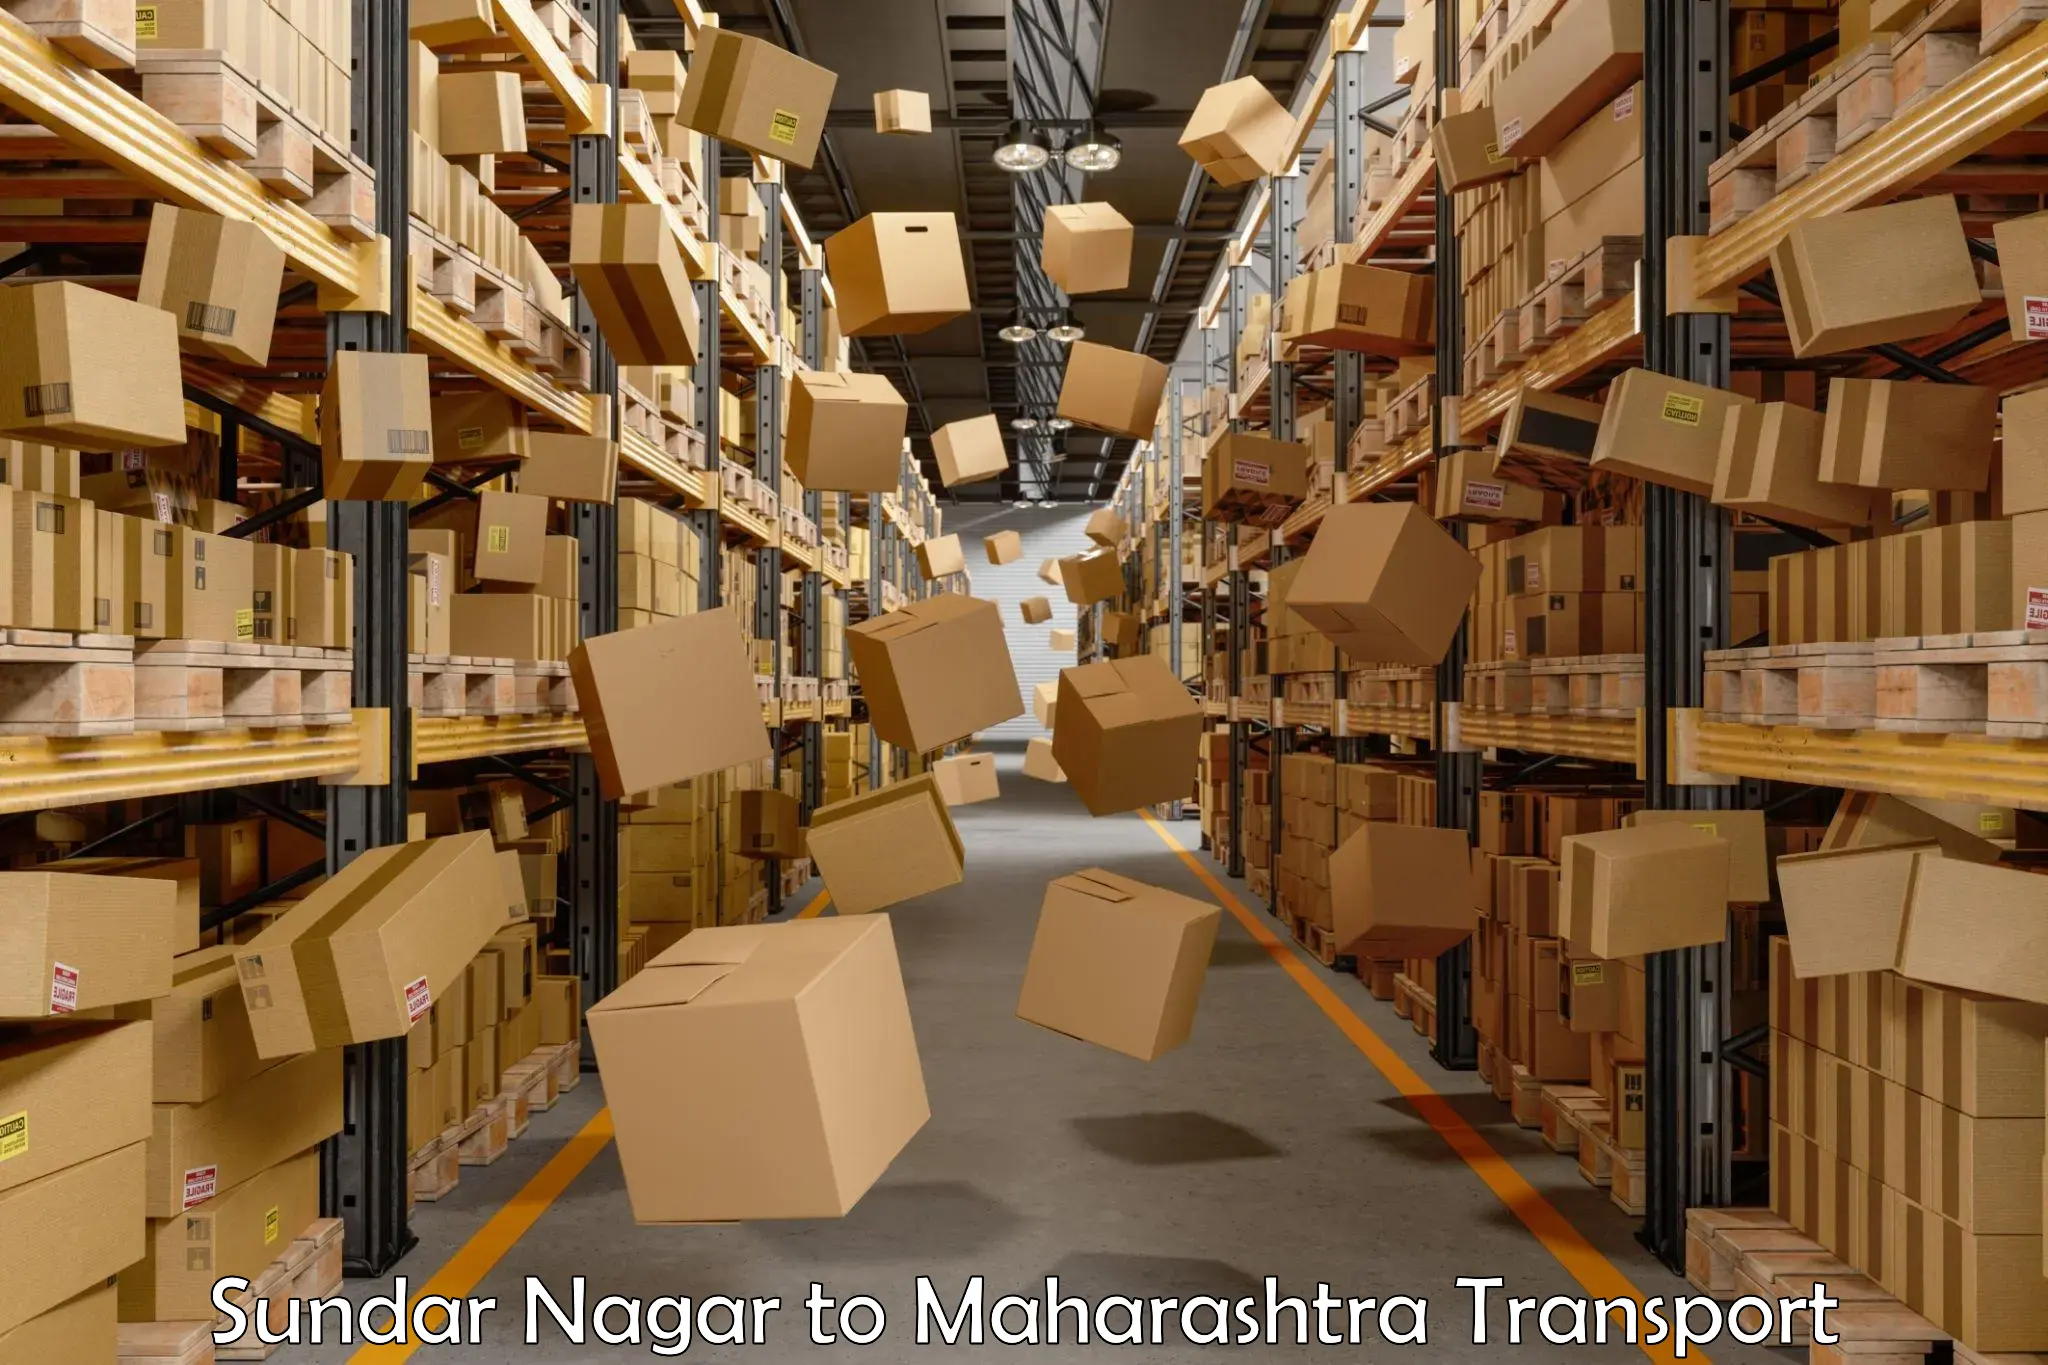 Land transport services Sundar Nagar to IIT Mumbai